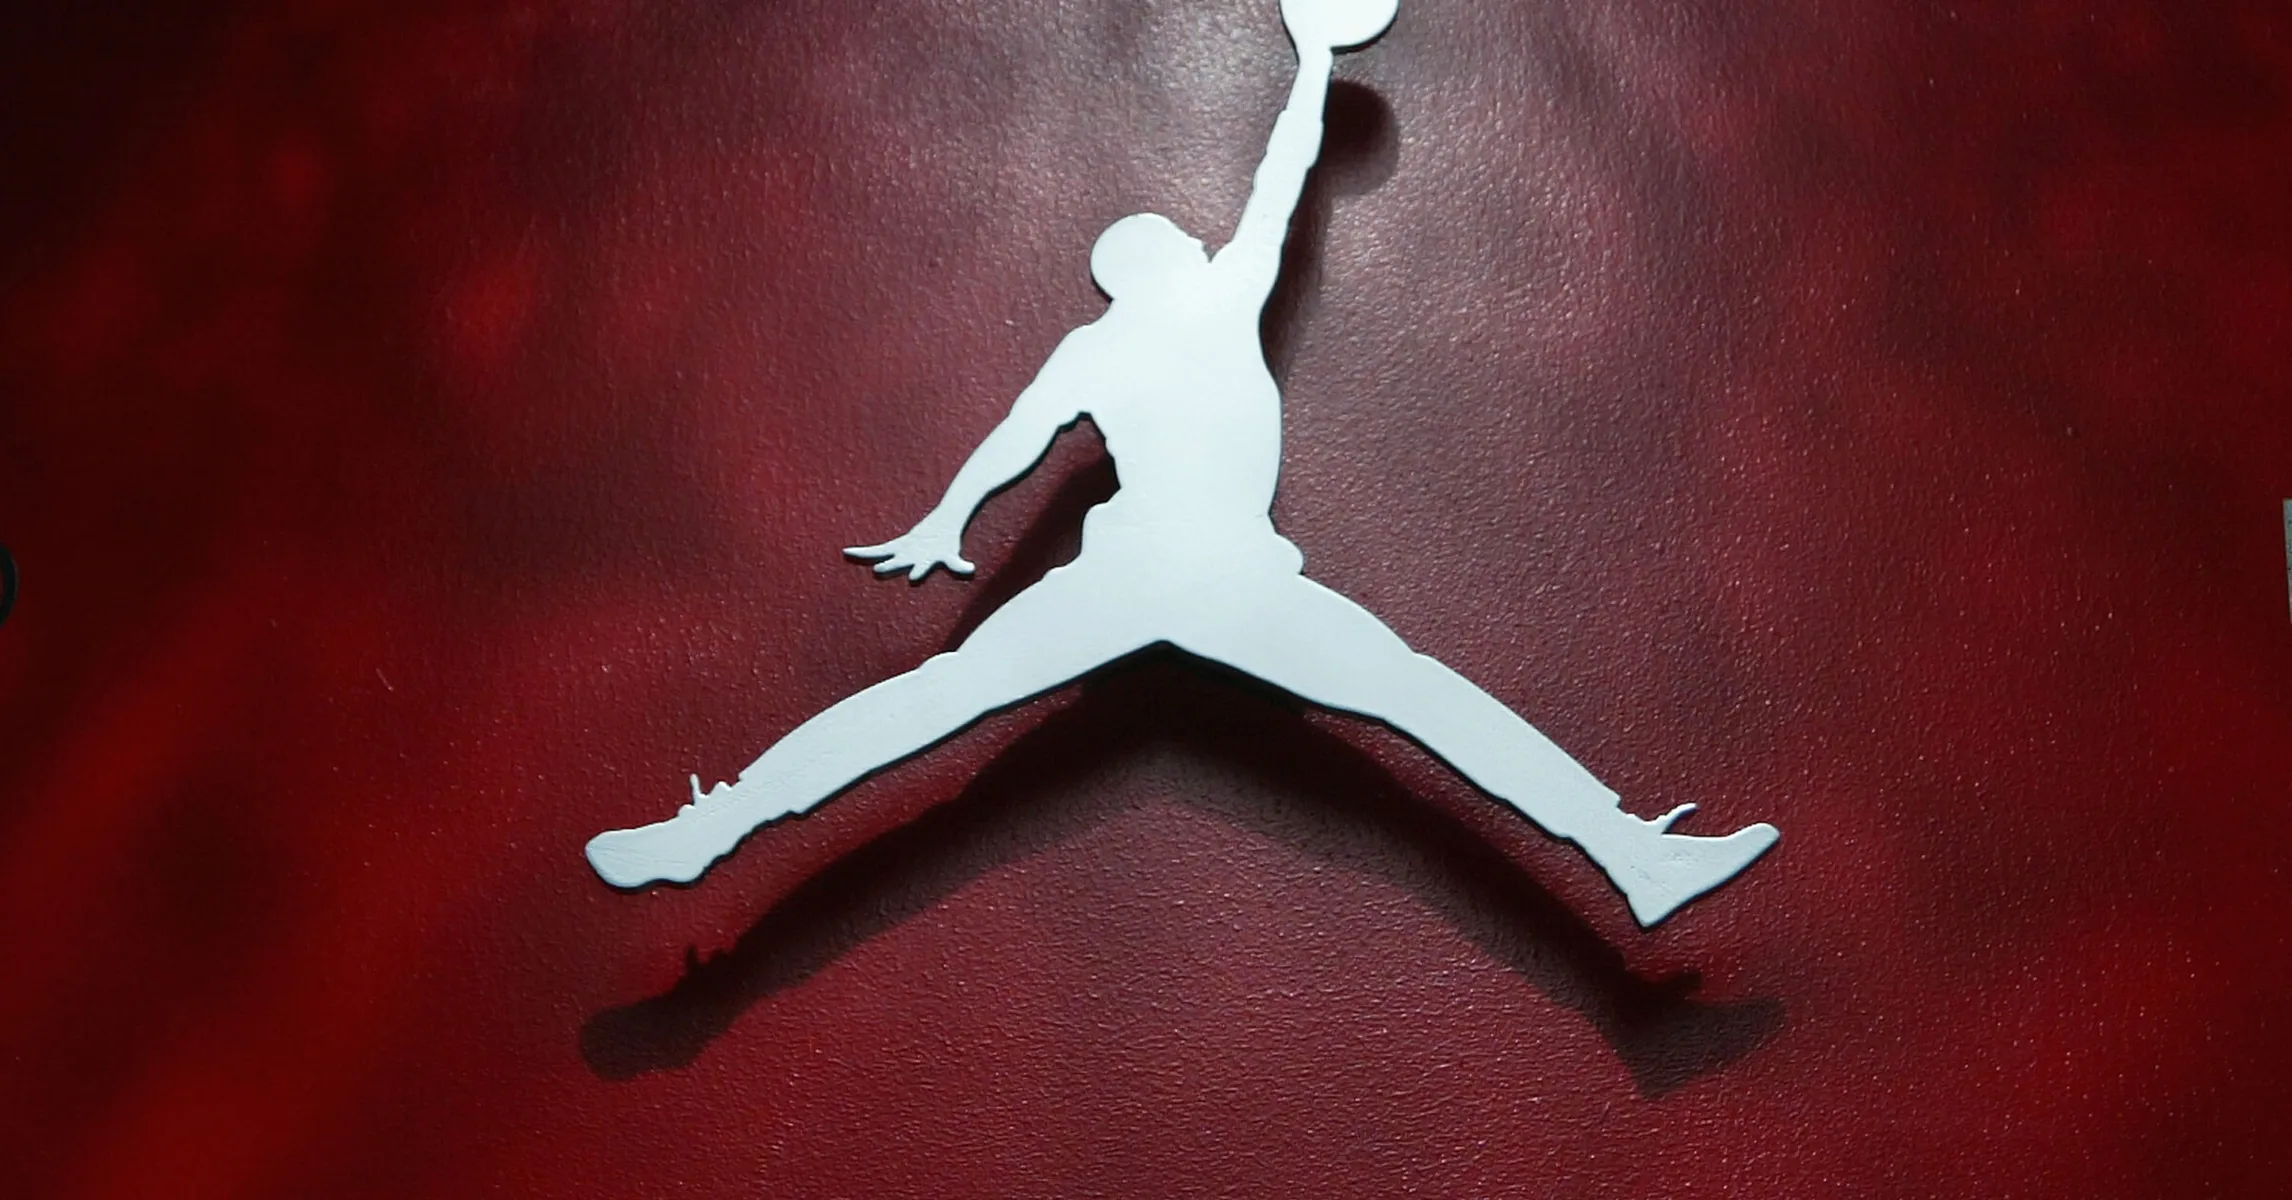 Nike SB x Air Jordan 4 “Navy” Receives Exclusive First Look